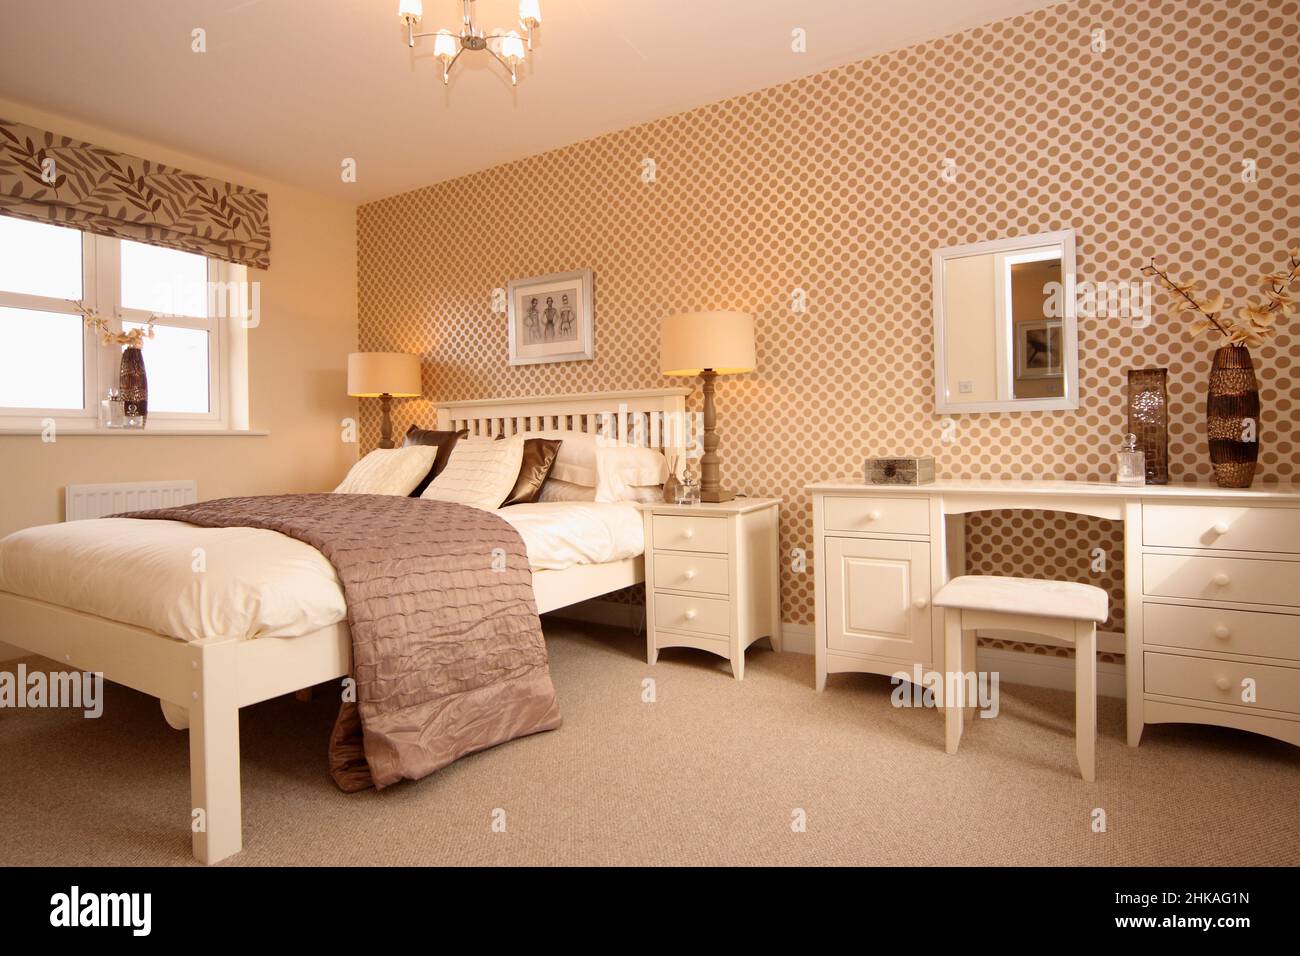 Chambre avec lit double king size surélevé, coiffeuse, lampes de chevet, couvre-lit, jeté de lit, mur Banque D'Images